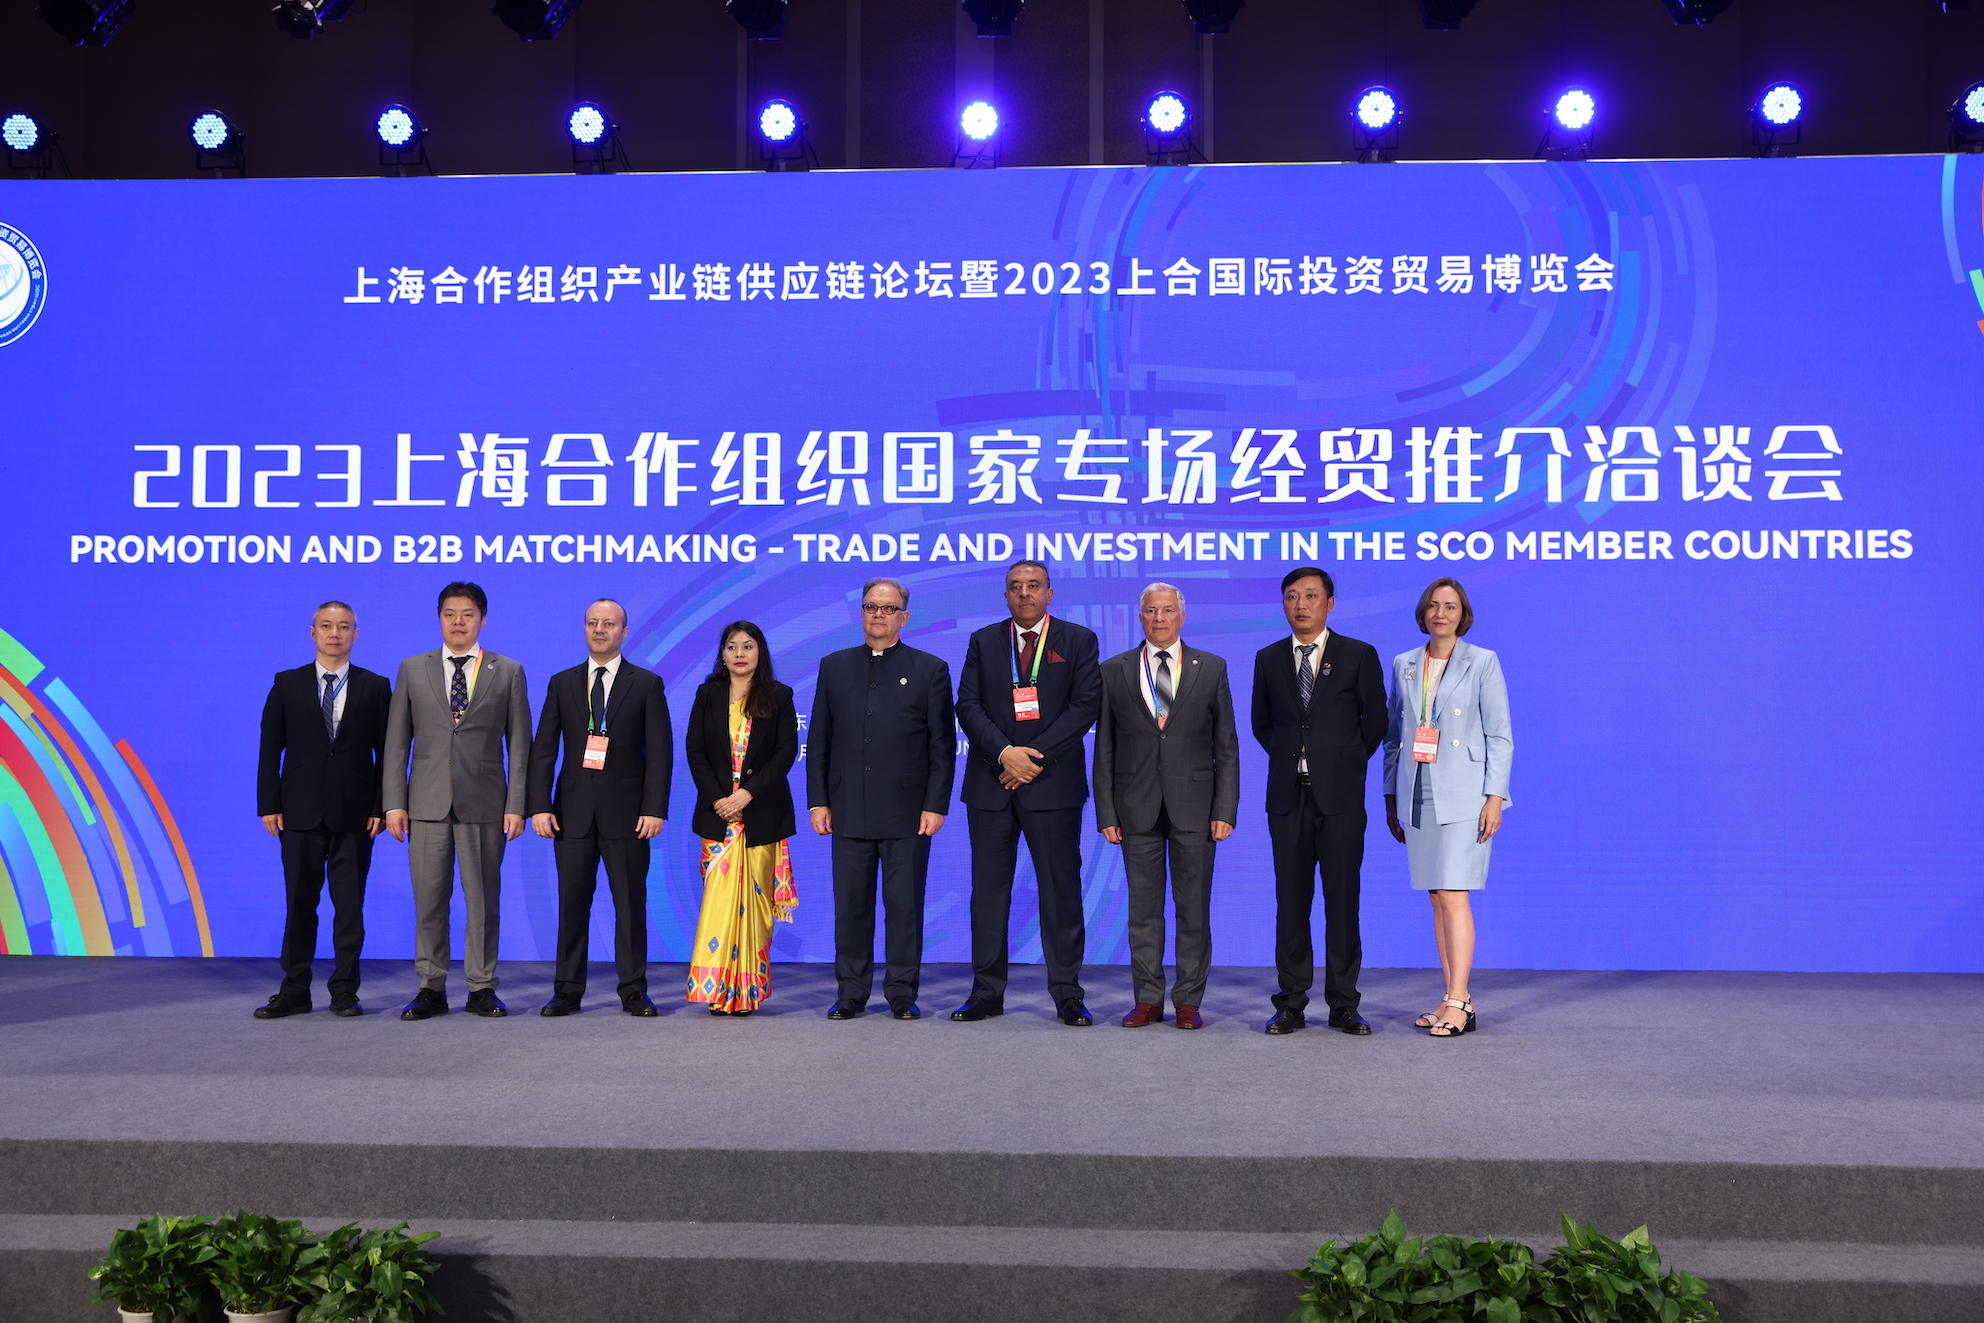 上海合作組織國家專場經貿推介洽談會達成合作意向約20億元